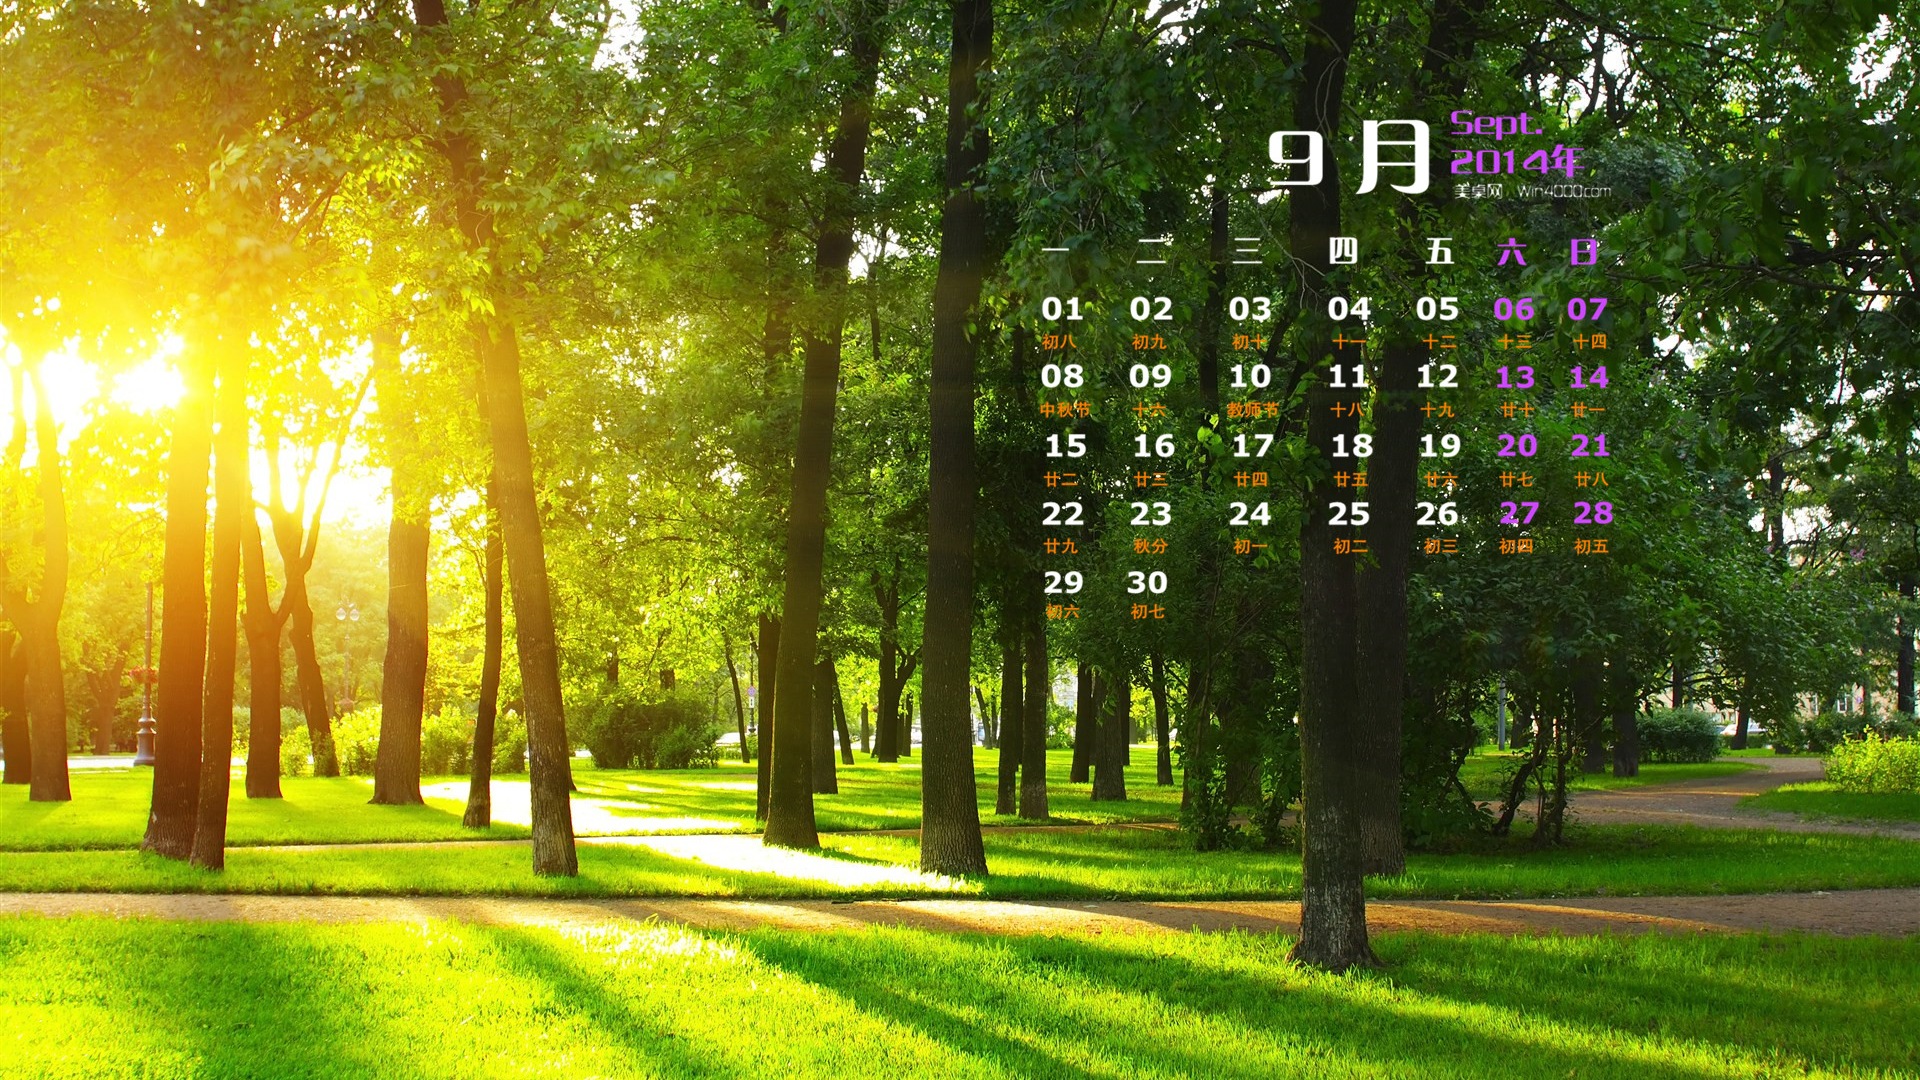 September 2014 Calendar wallpaper (1) #19 - 1920x1080